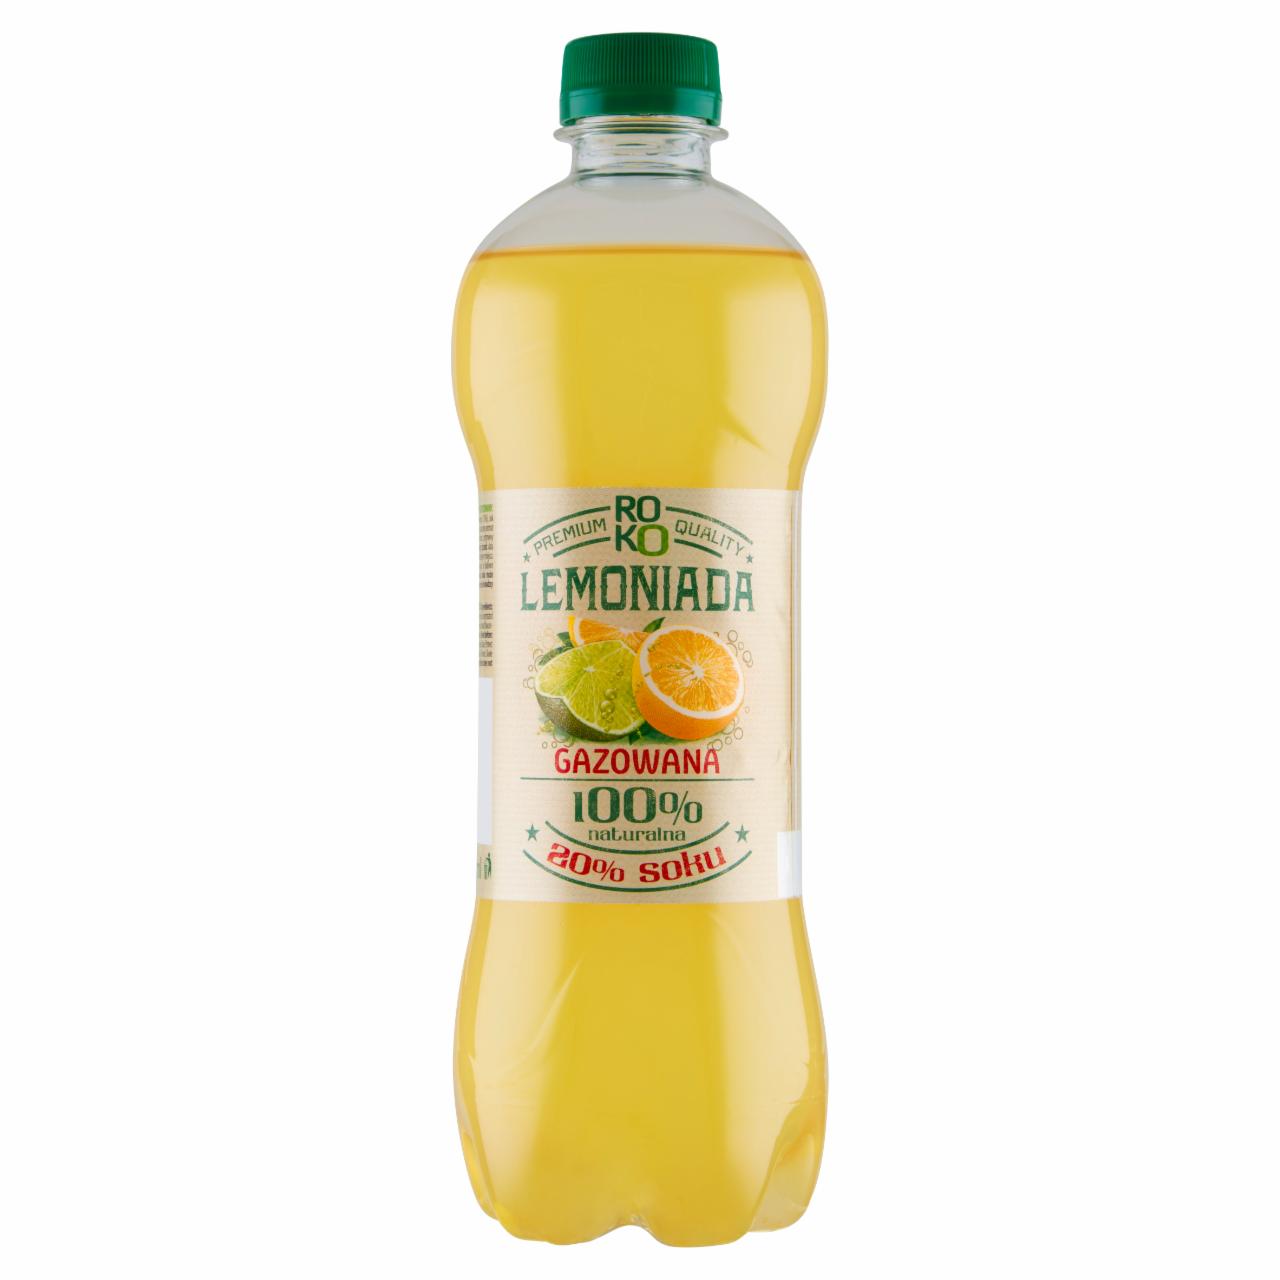 Zdjęcia - ROKO Lemoniada gazowana o smaku cytrynowo-limonkowym 555 ml